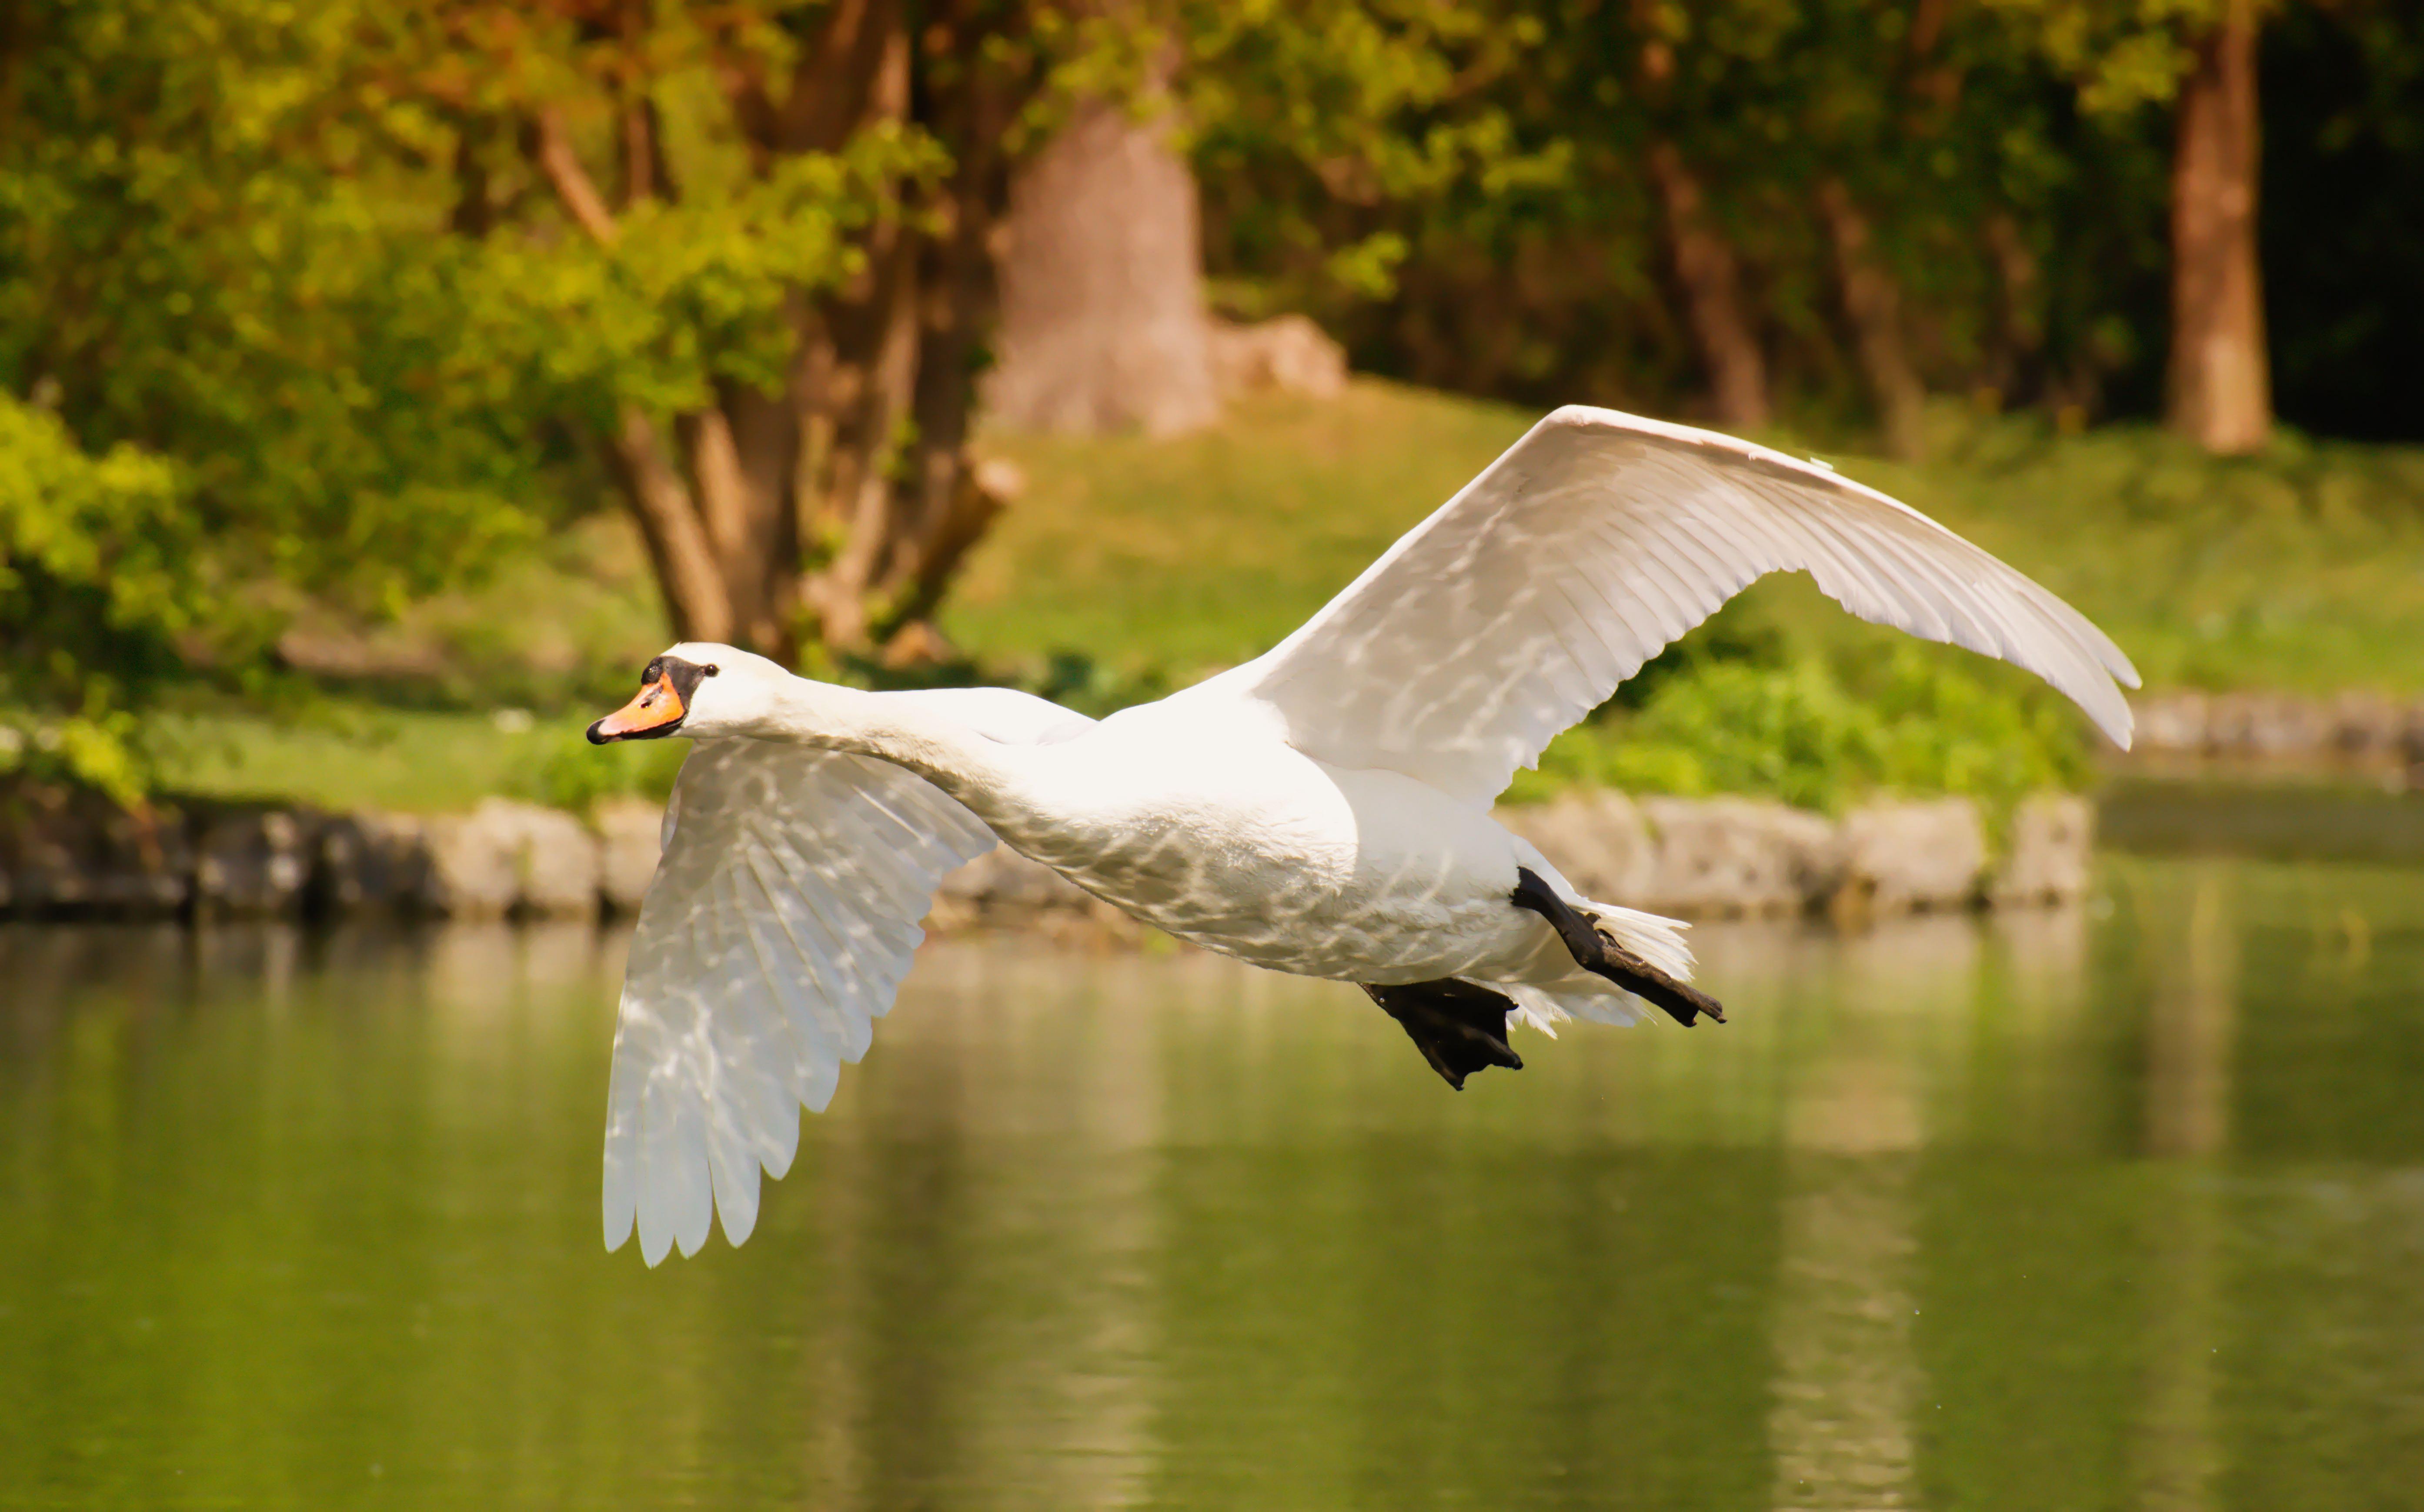 Swan In Flight , HD Wallpaper & Backgrounds